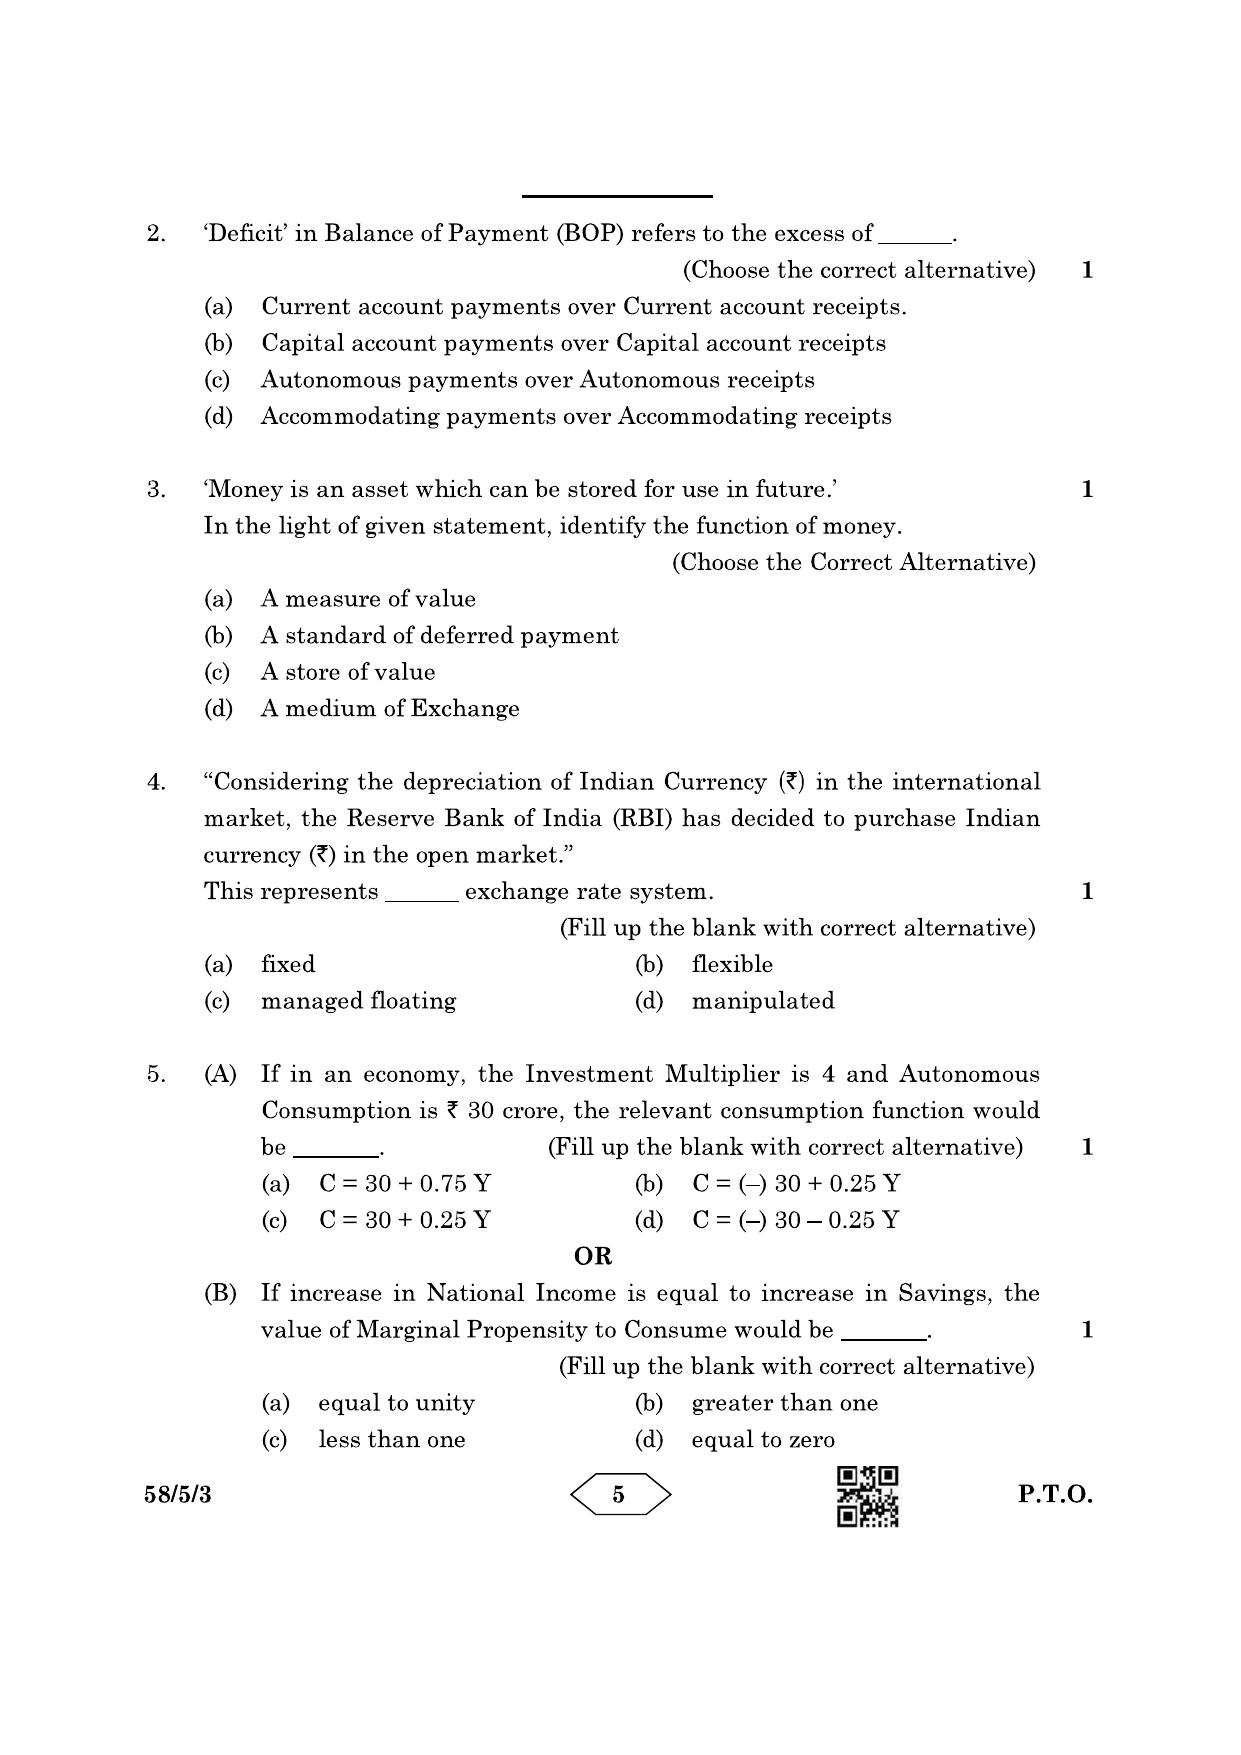 CBSE Class 12 58-5-3 Economics 2023 Question Paper - Page 5